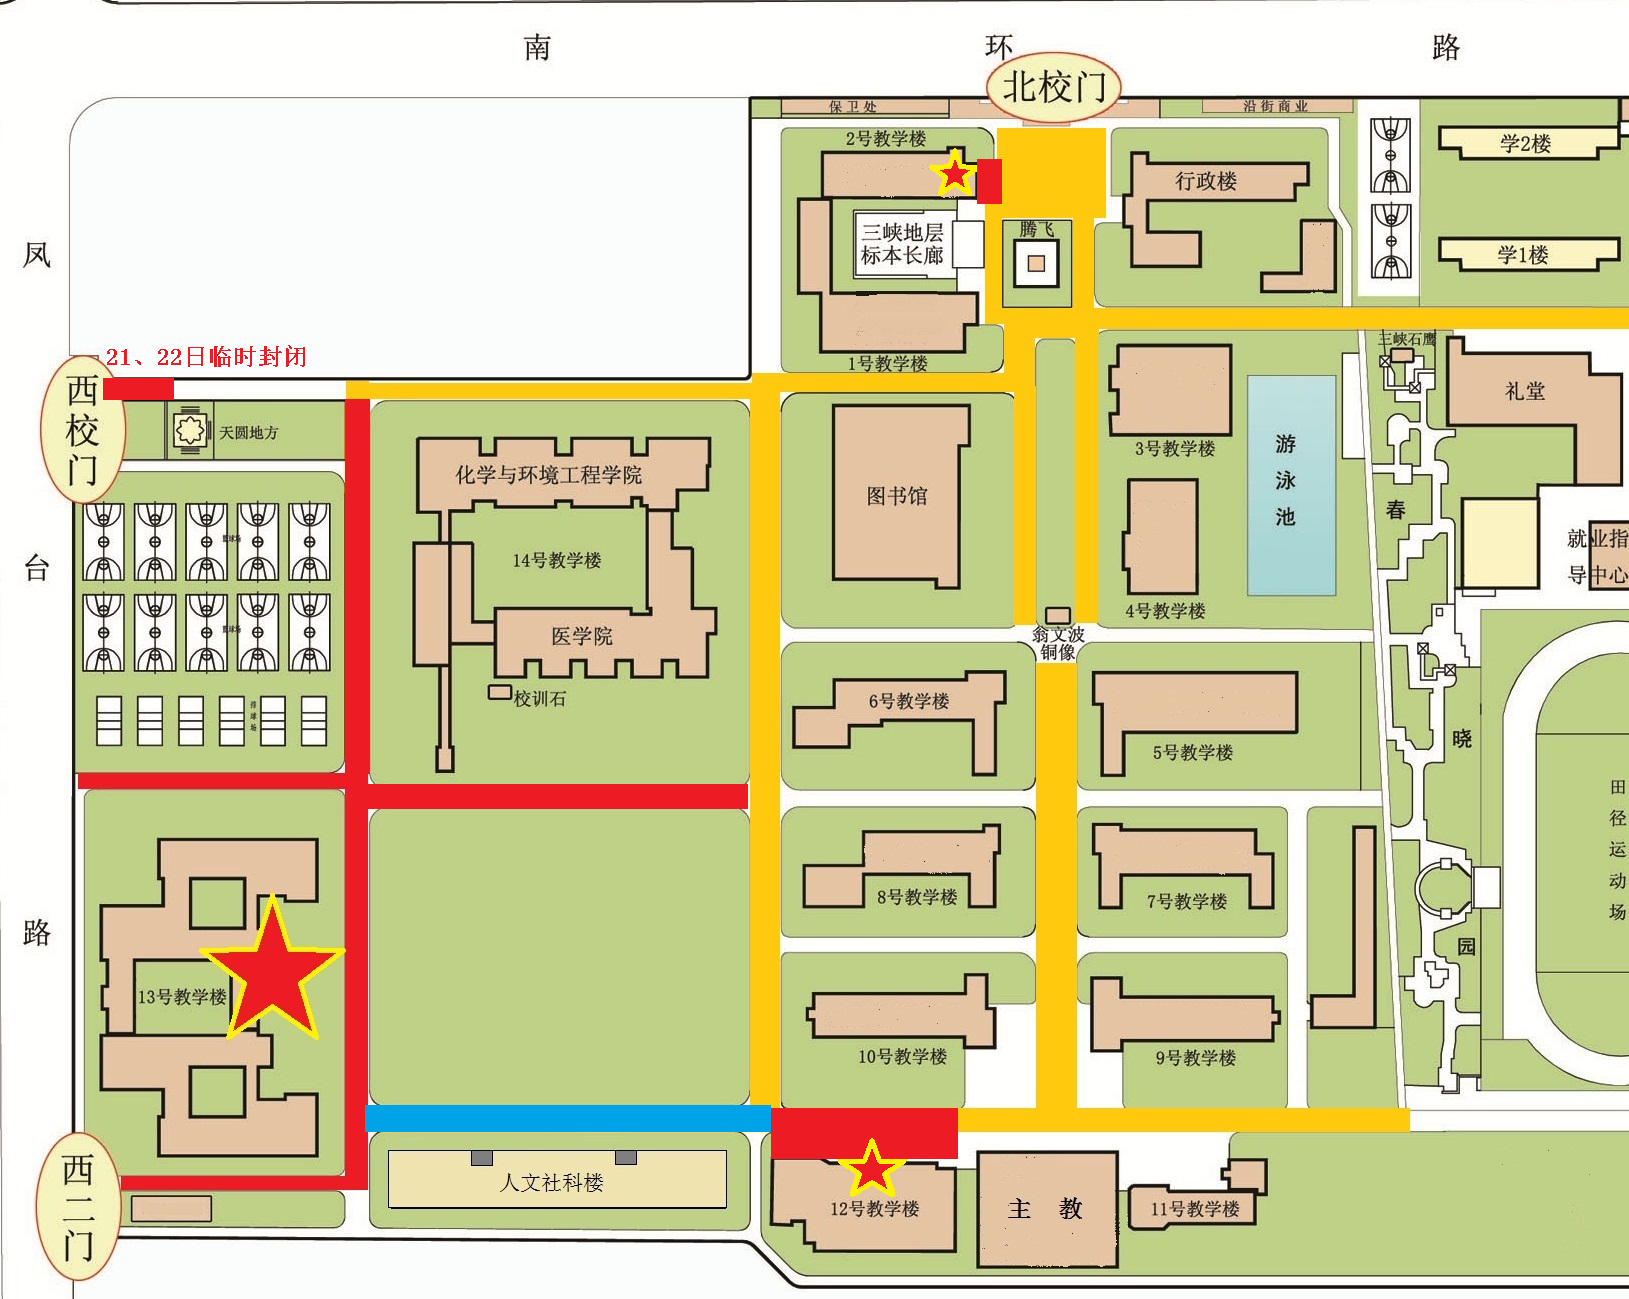 附件:长江大学东校区考试现场区域图